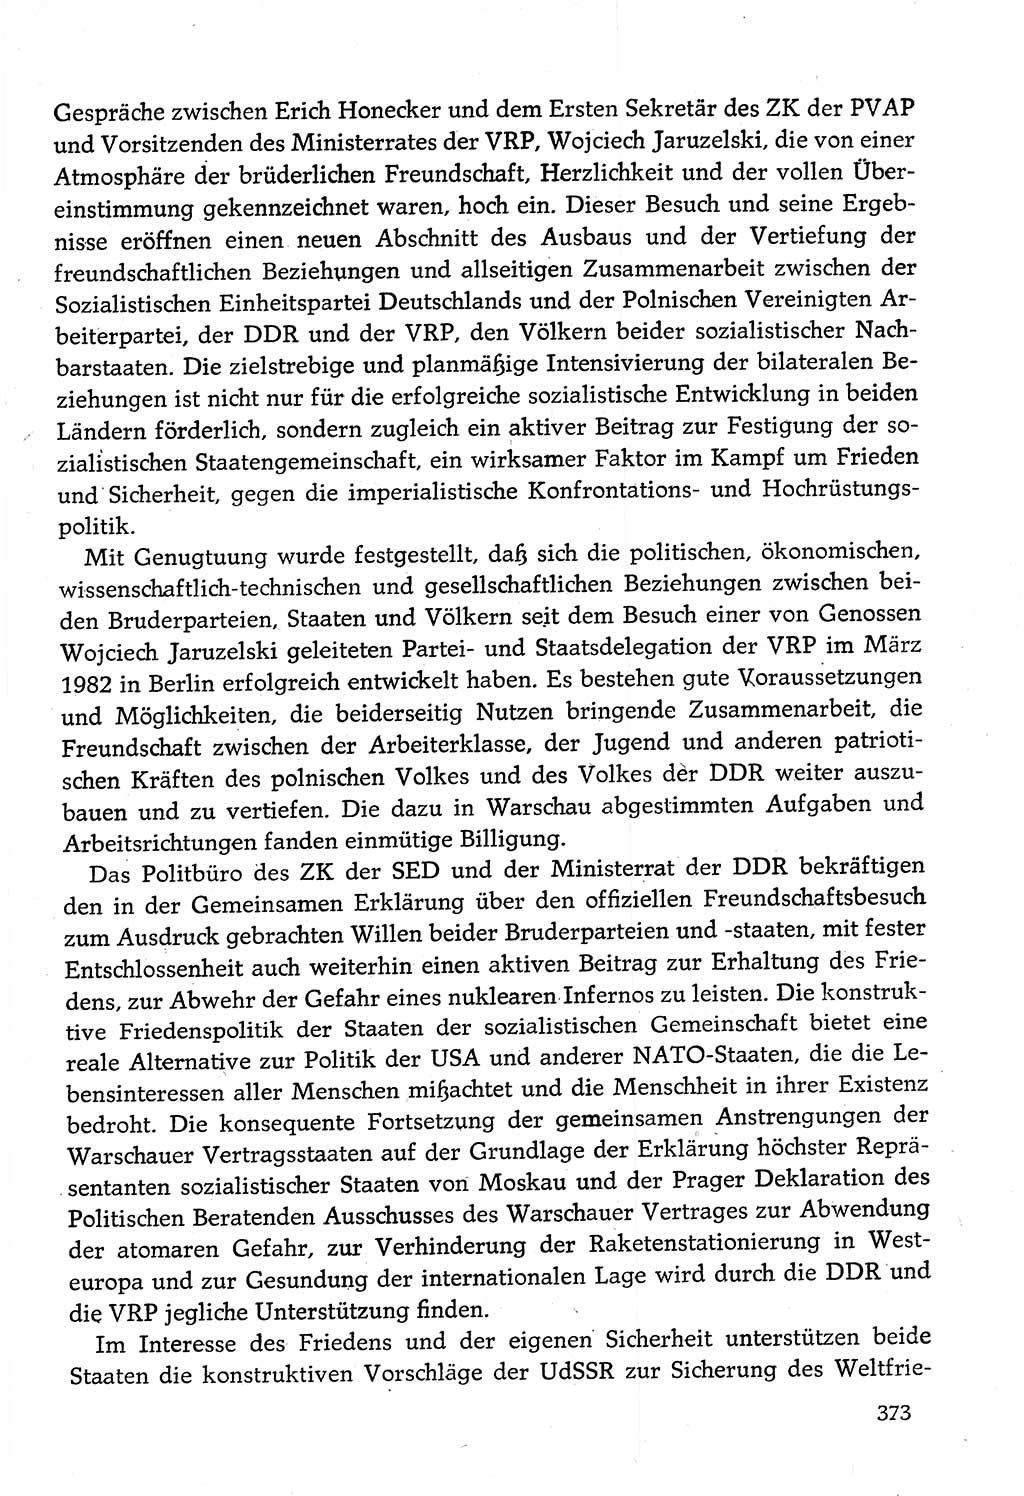 Dokumente der Sozialistischen Einheitspartei Deutschlands (SED) [Deutsche Demokratische Republik (DDR)] 1982-1983, Seite 373 (Dok. SED DDR 1982-1983, S. 373)